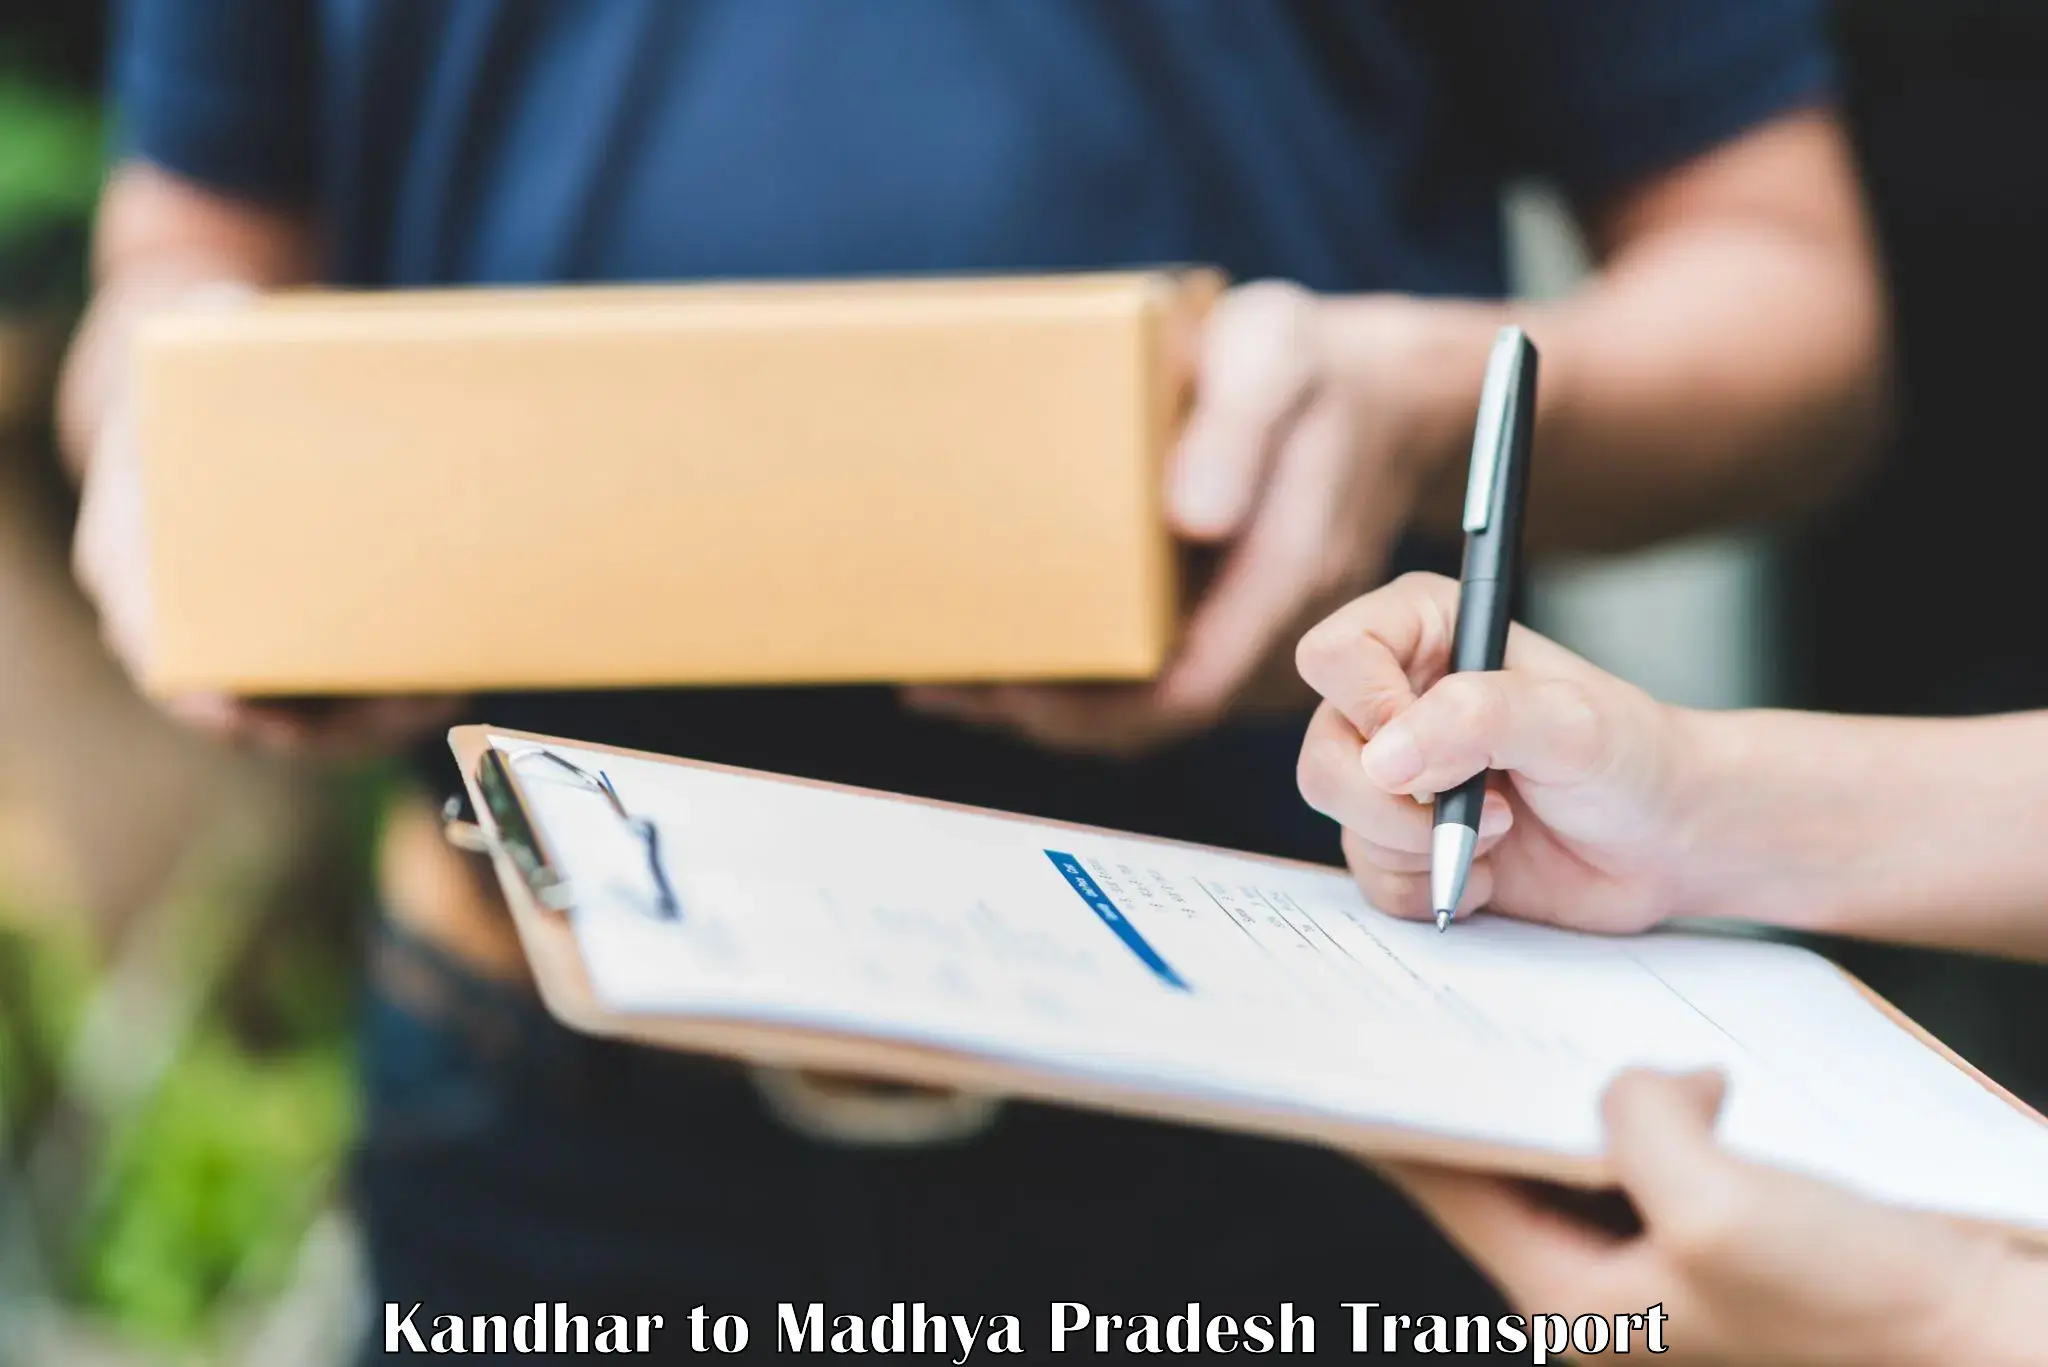 Container transport service Kandhar to Mundi